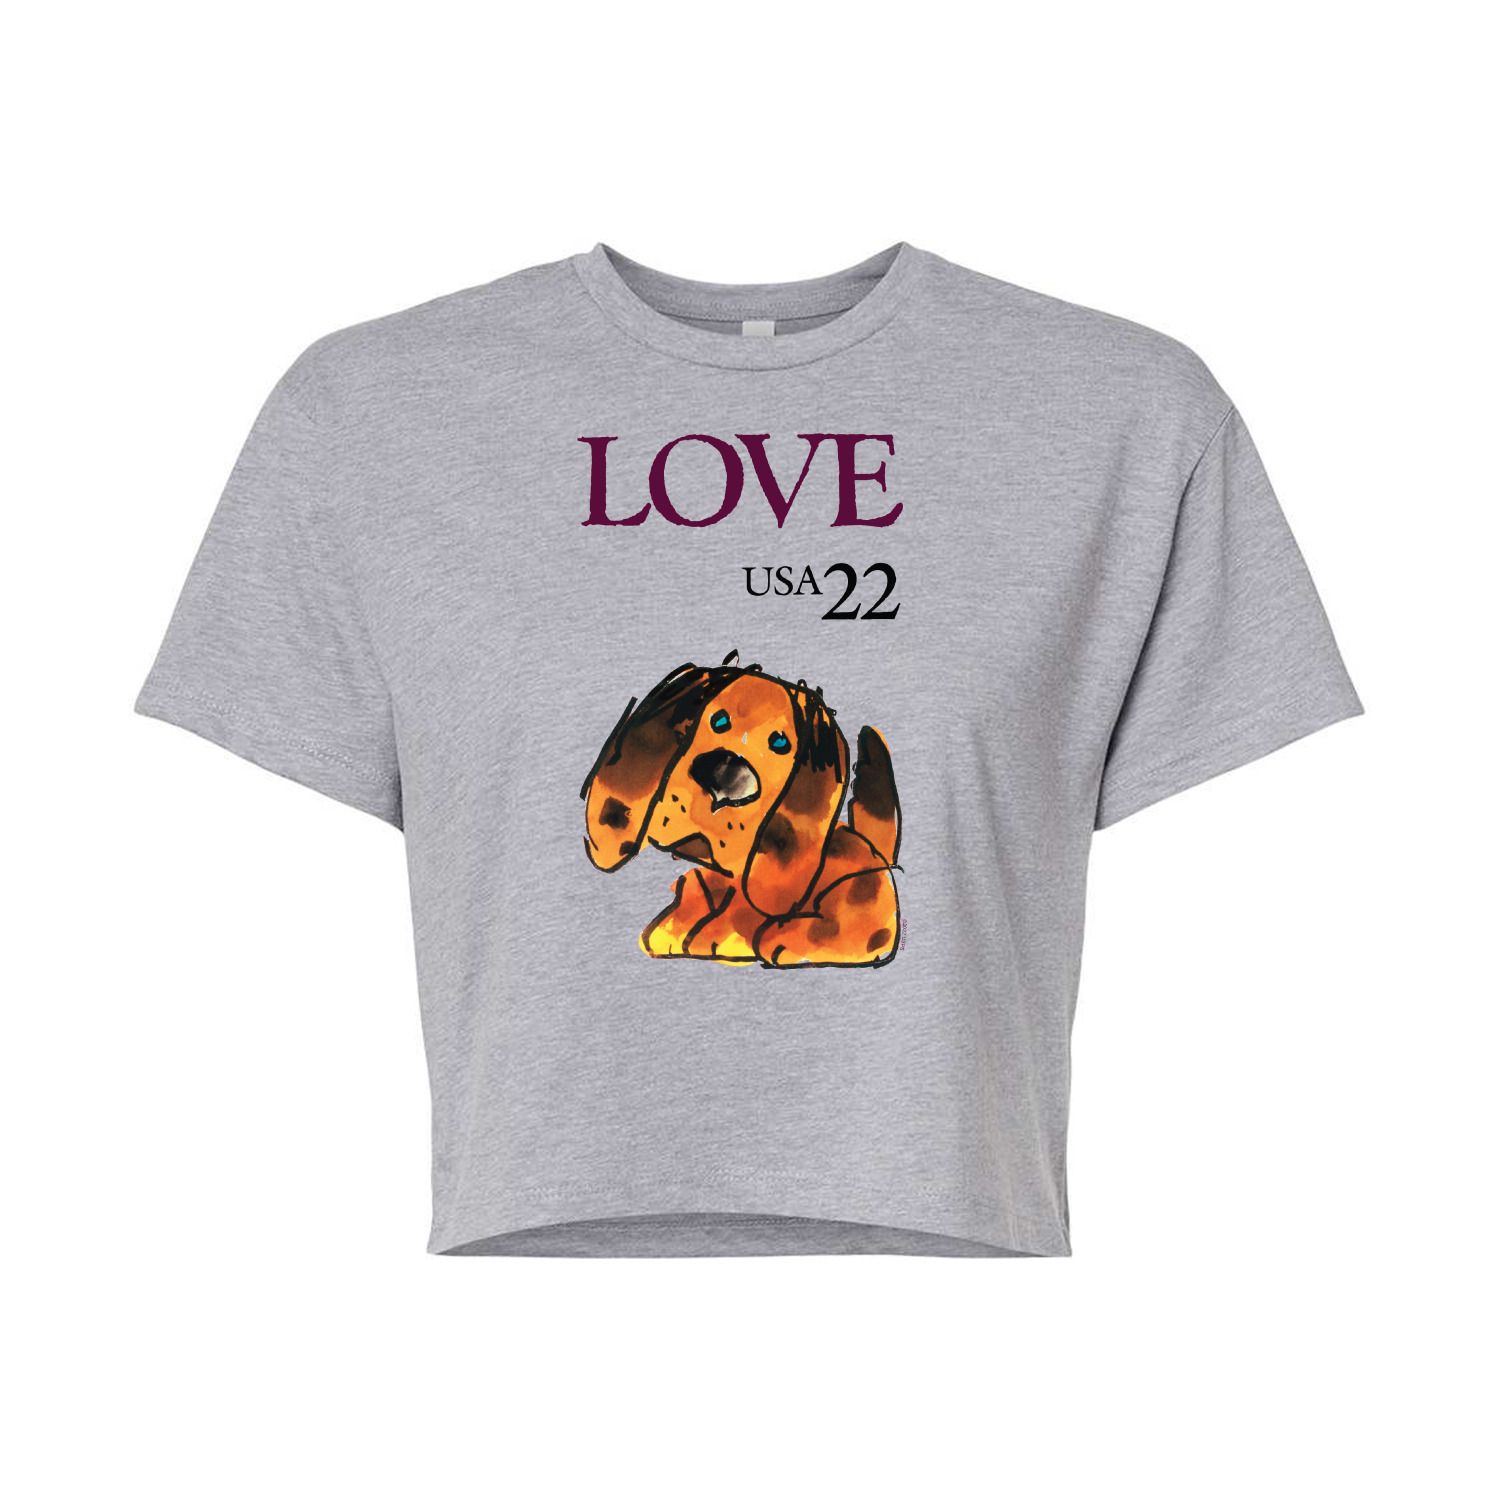 Укороченная футболка USPS Puppy Love 22 для юниоров Licensed Character, серый укороченная худи usps love heart stamp для юниоров licensed character